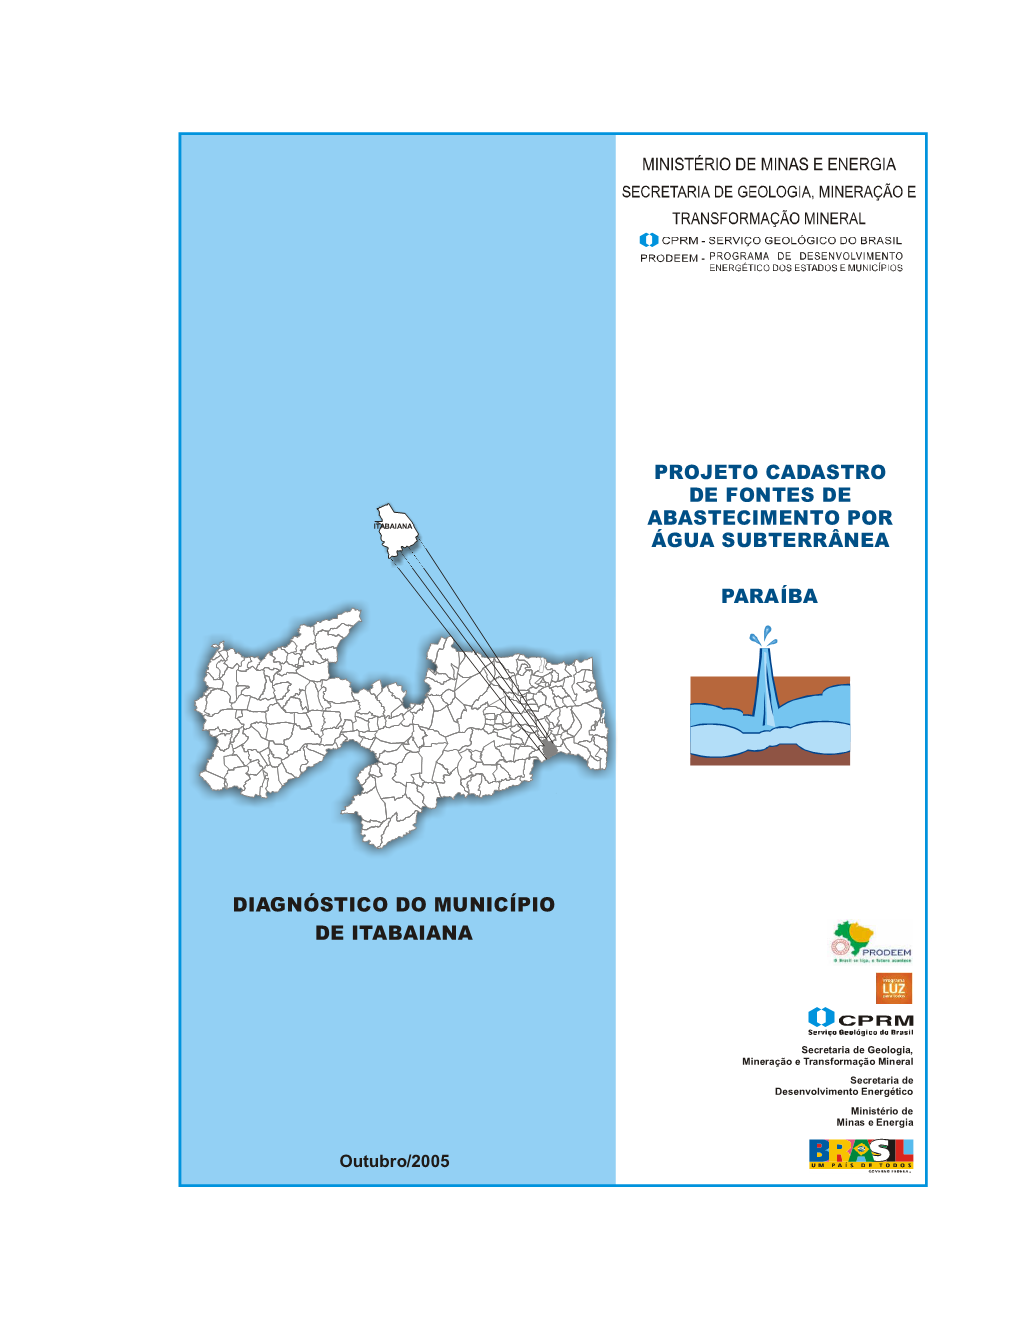 Diagnóstico Do Município De Itabaiana Paraíba Projeto Cadastro De Fontes De Abastecimento Por Água Subterrânea